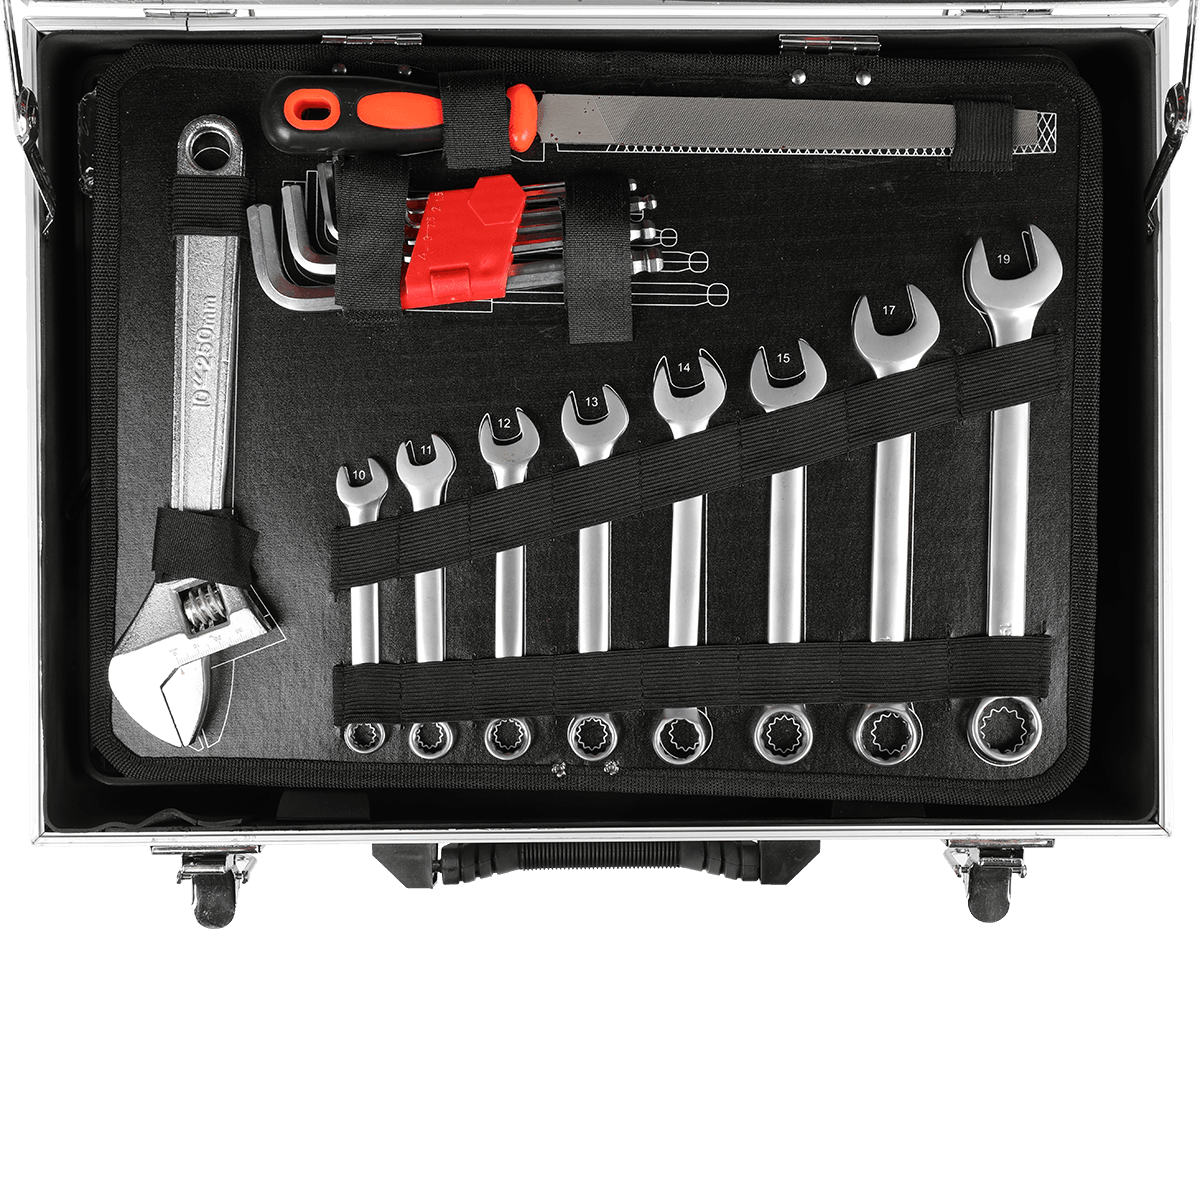 499 ks Ferramentas Professional Hardware Automotive Tool Socket Kit de Reparao de Automobile Tools Set